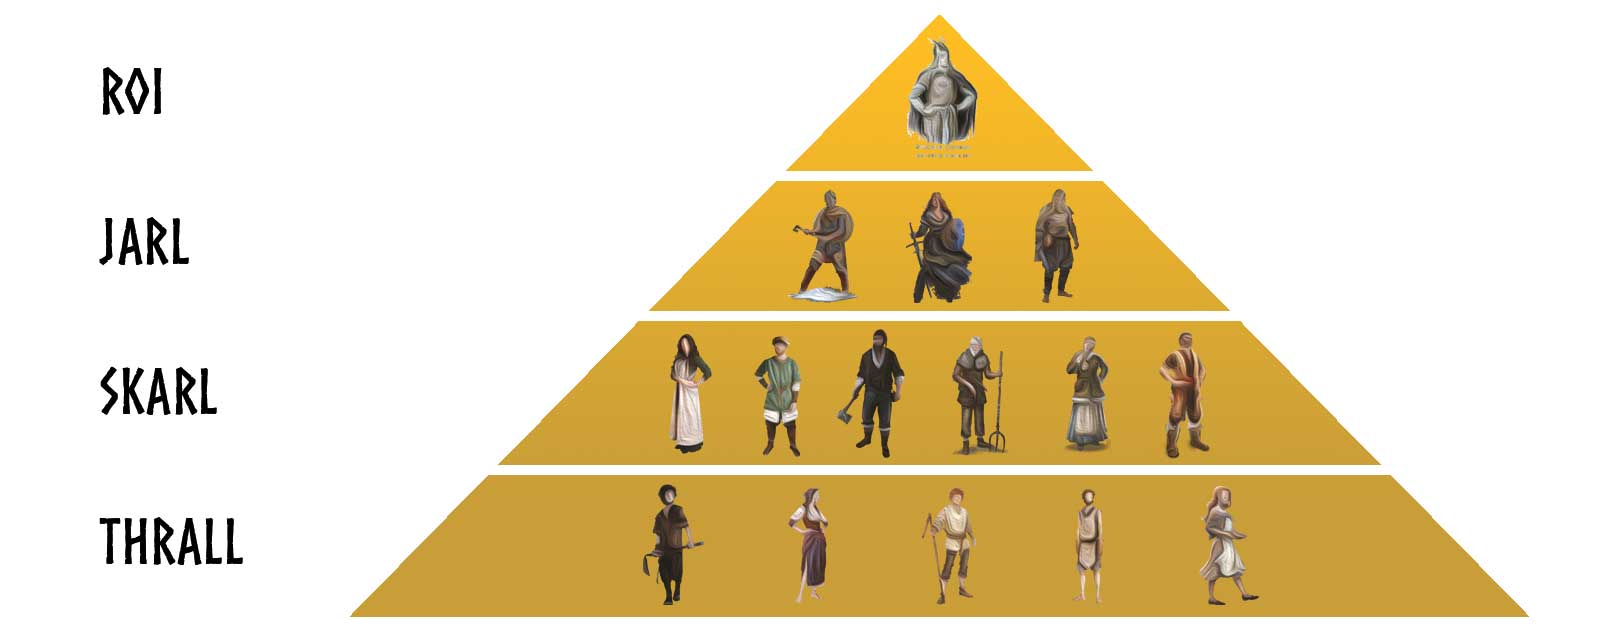 Hierarchy Viking Pyramid